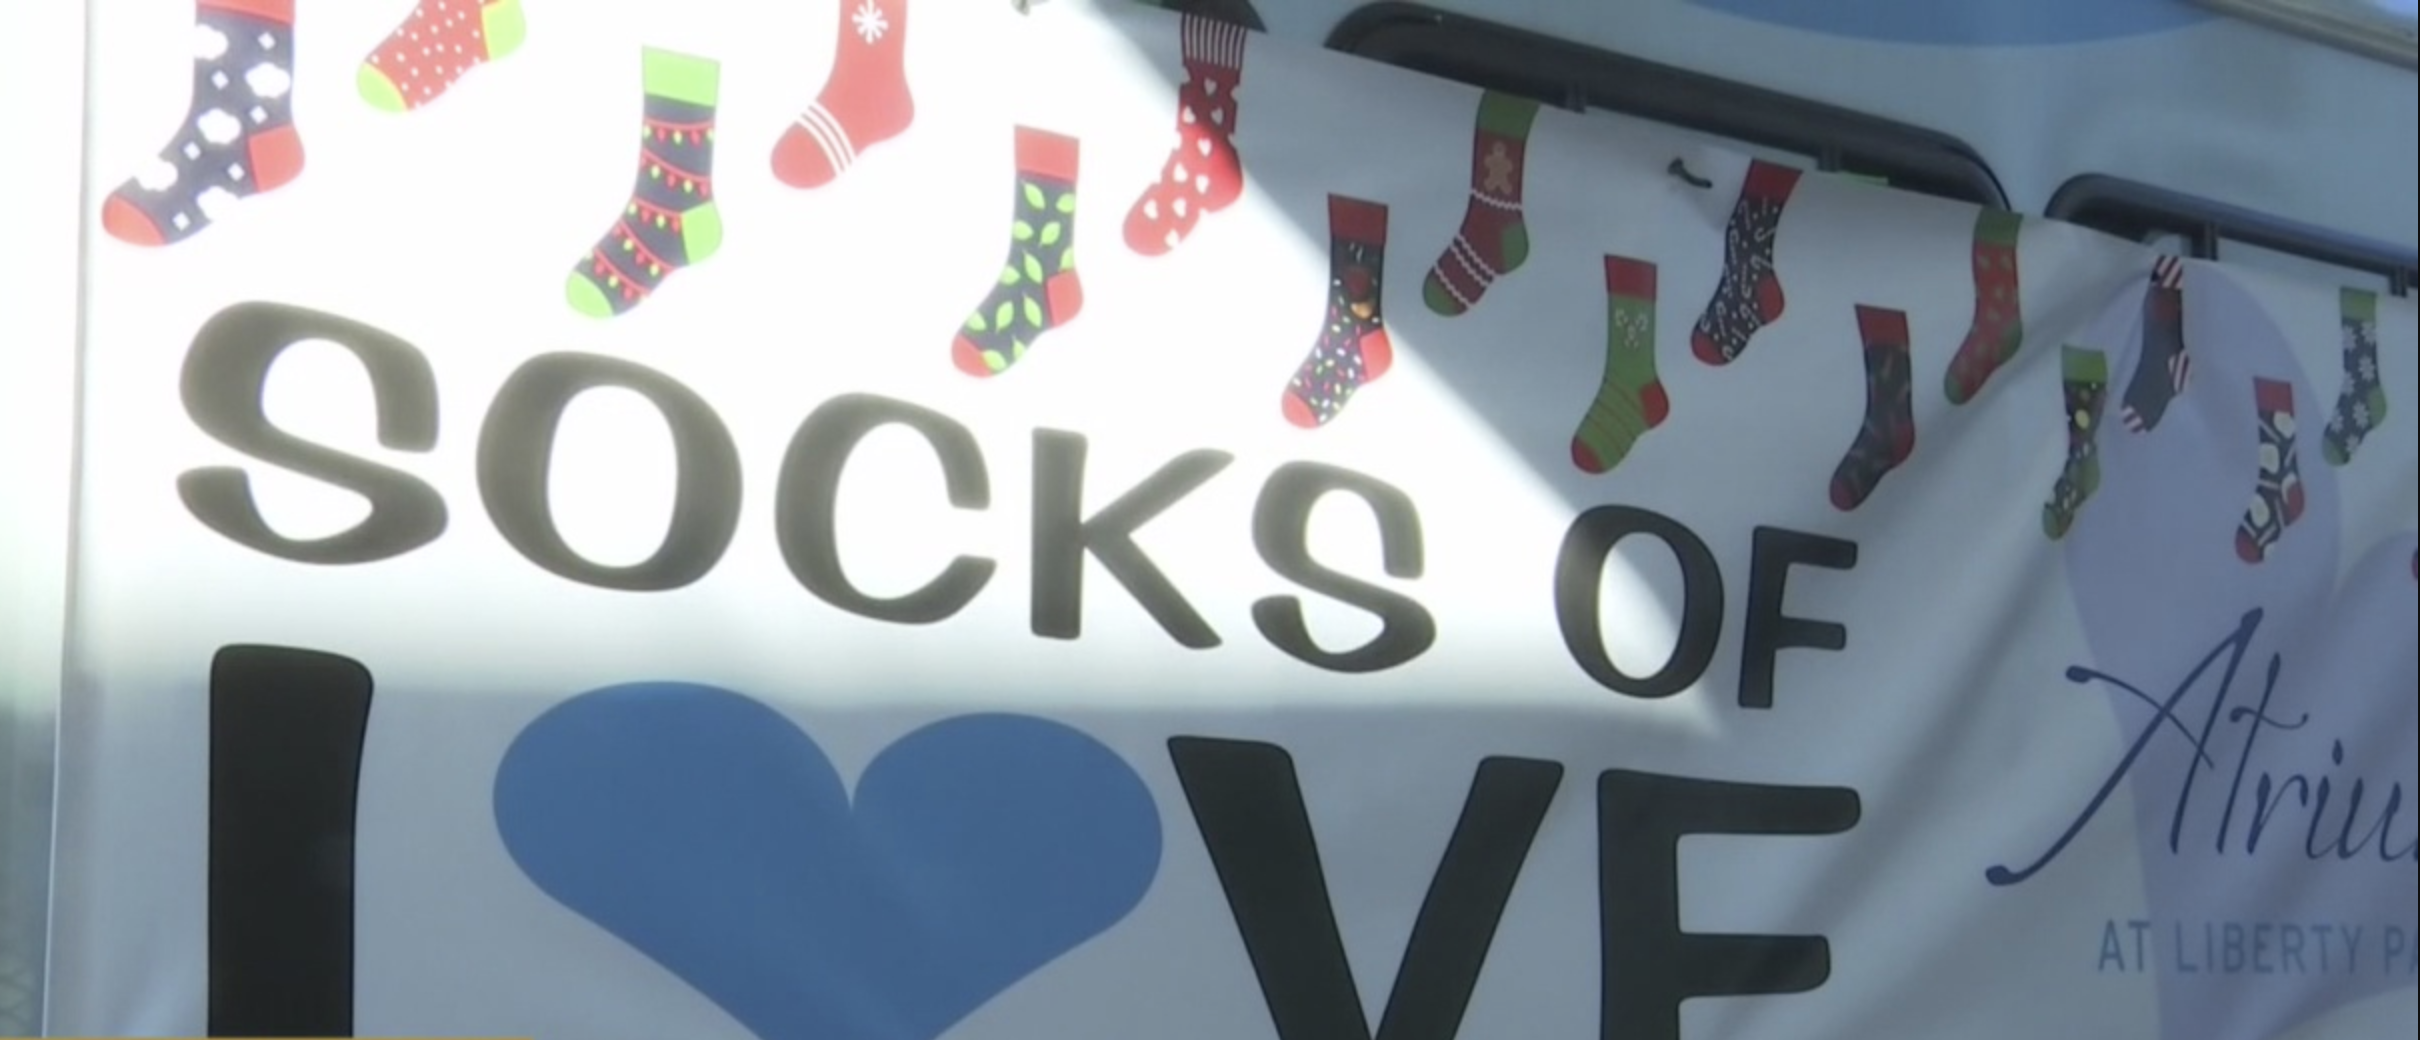 socks of love